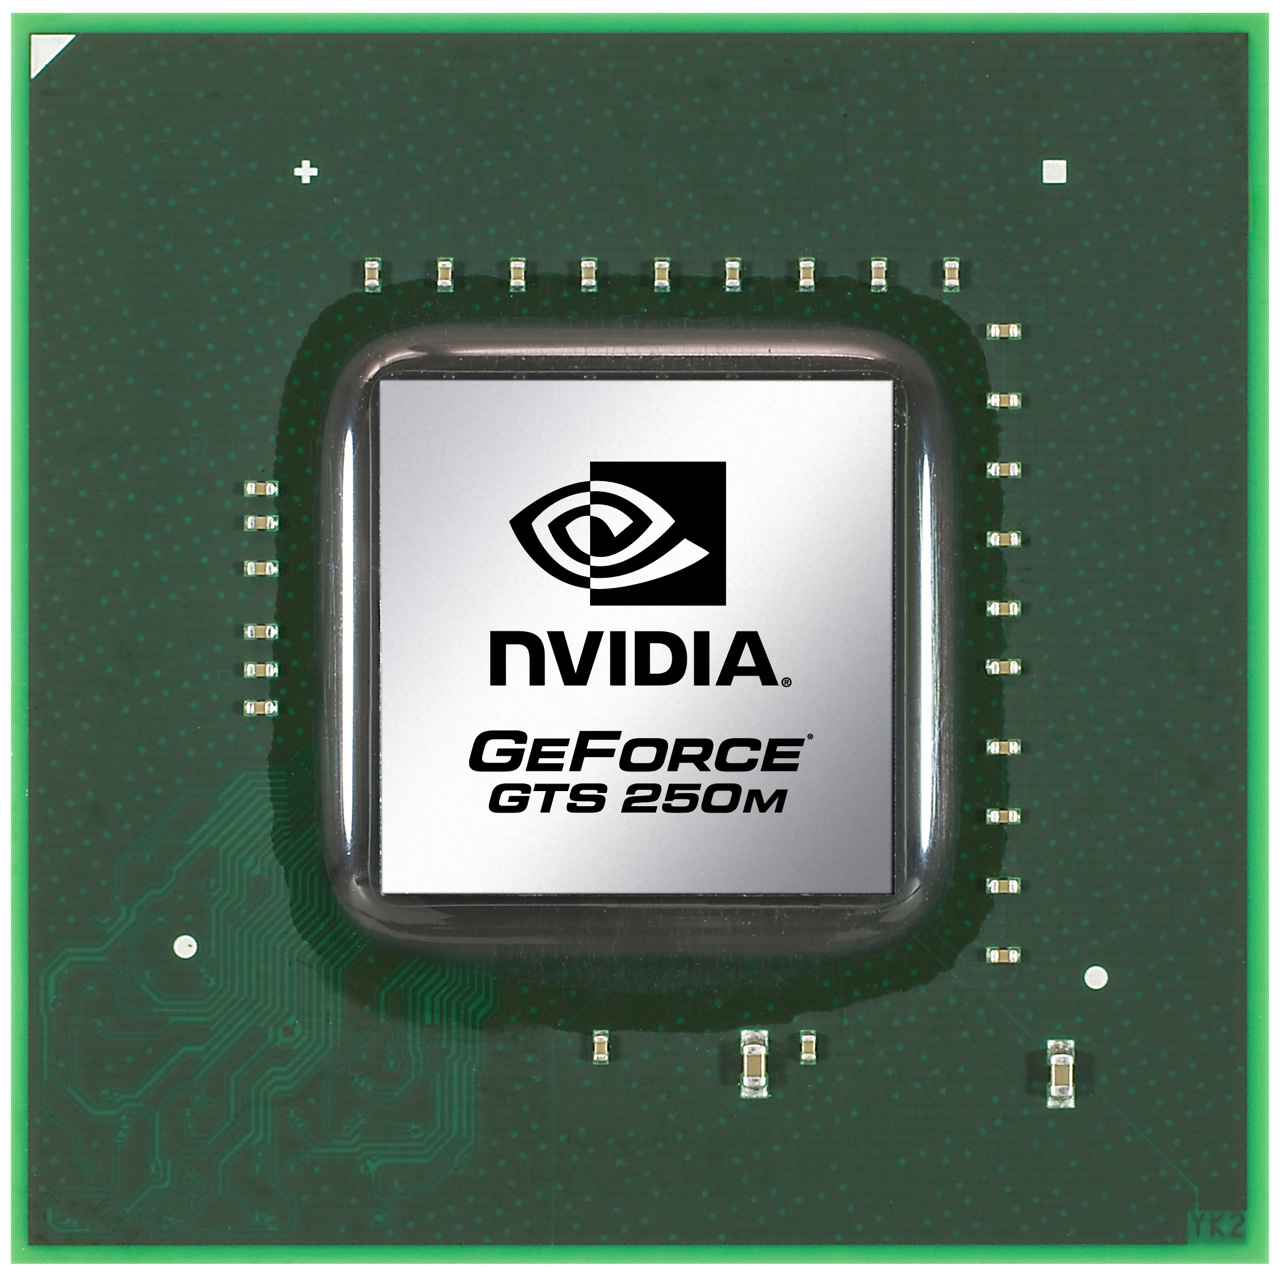 Nvidia geforce gt 740m дота 2 фото 16